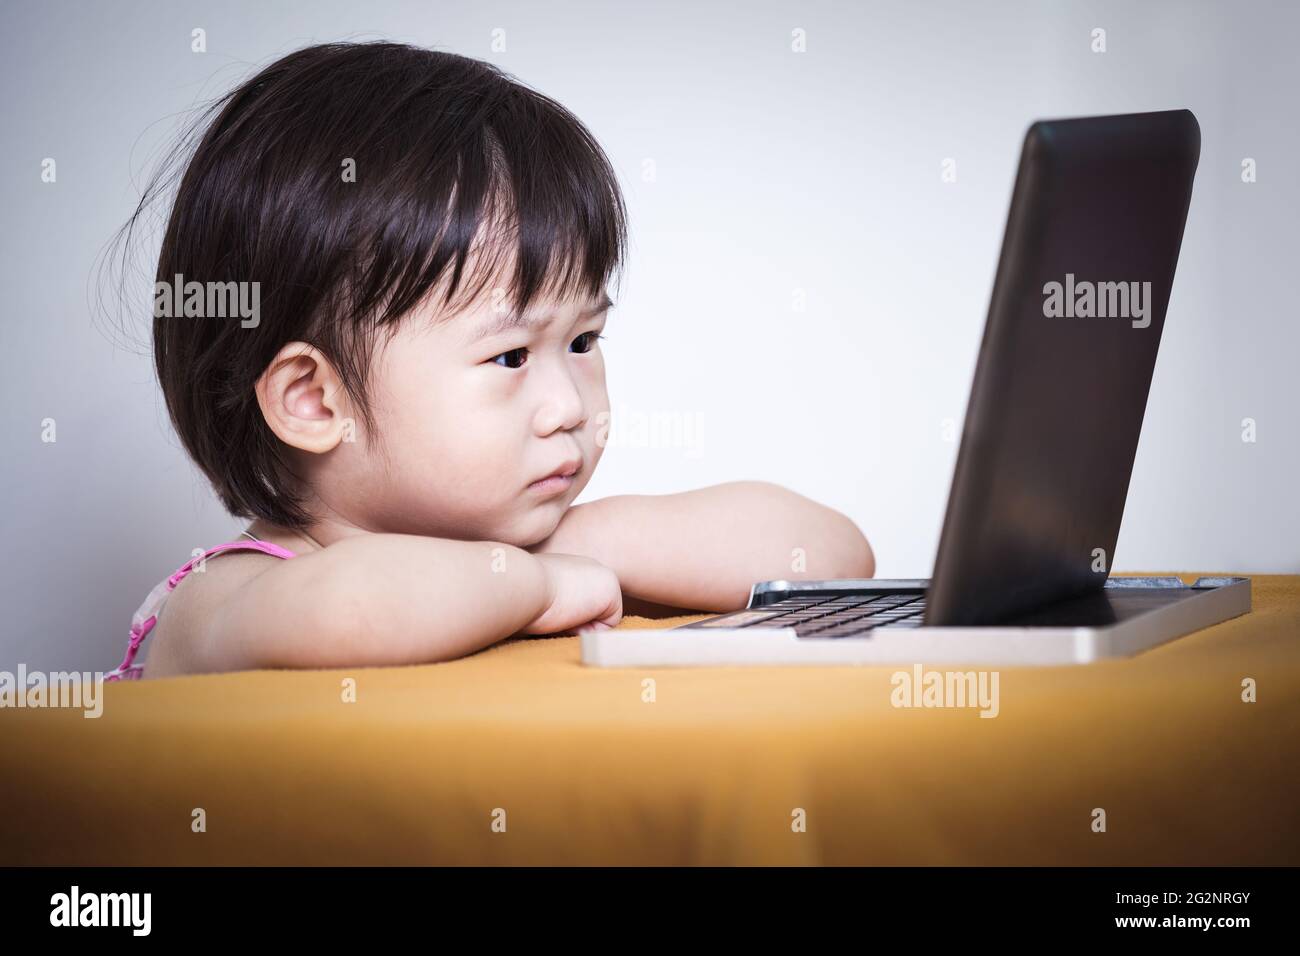 Ernsthaftes Kind, das auf einem digitalen Tablet-Computer mit Touchscreen sitzt und eine Geschichte anschaut, Konzept über Optik und Lernen, Studioaufnahme Stockfoto